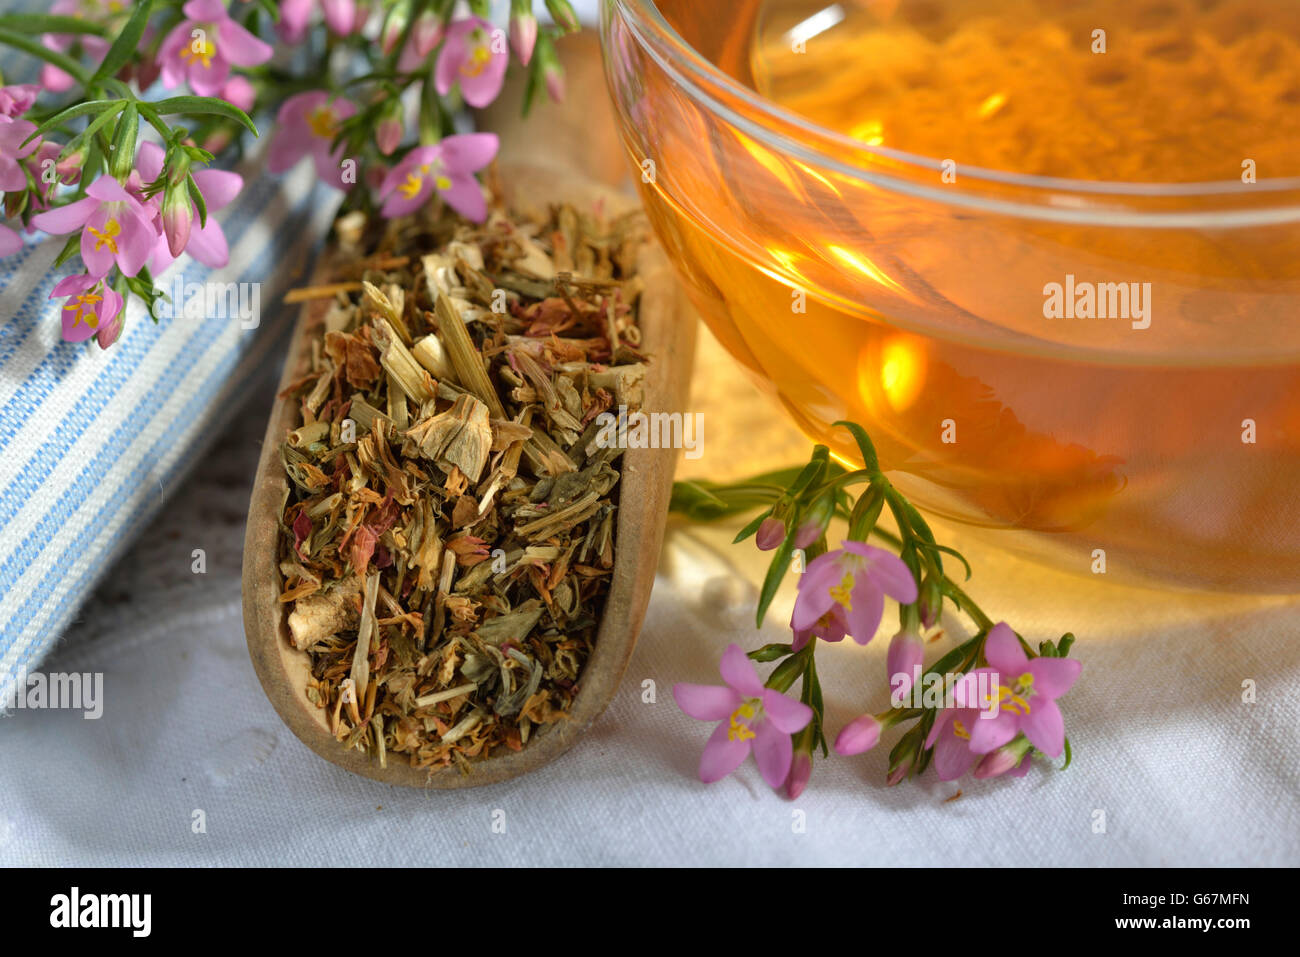 A cup of centaury tea / (Centaurium erythraea) Stock Photo